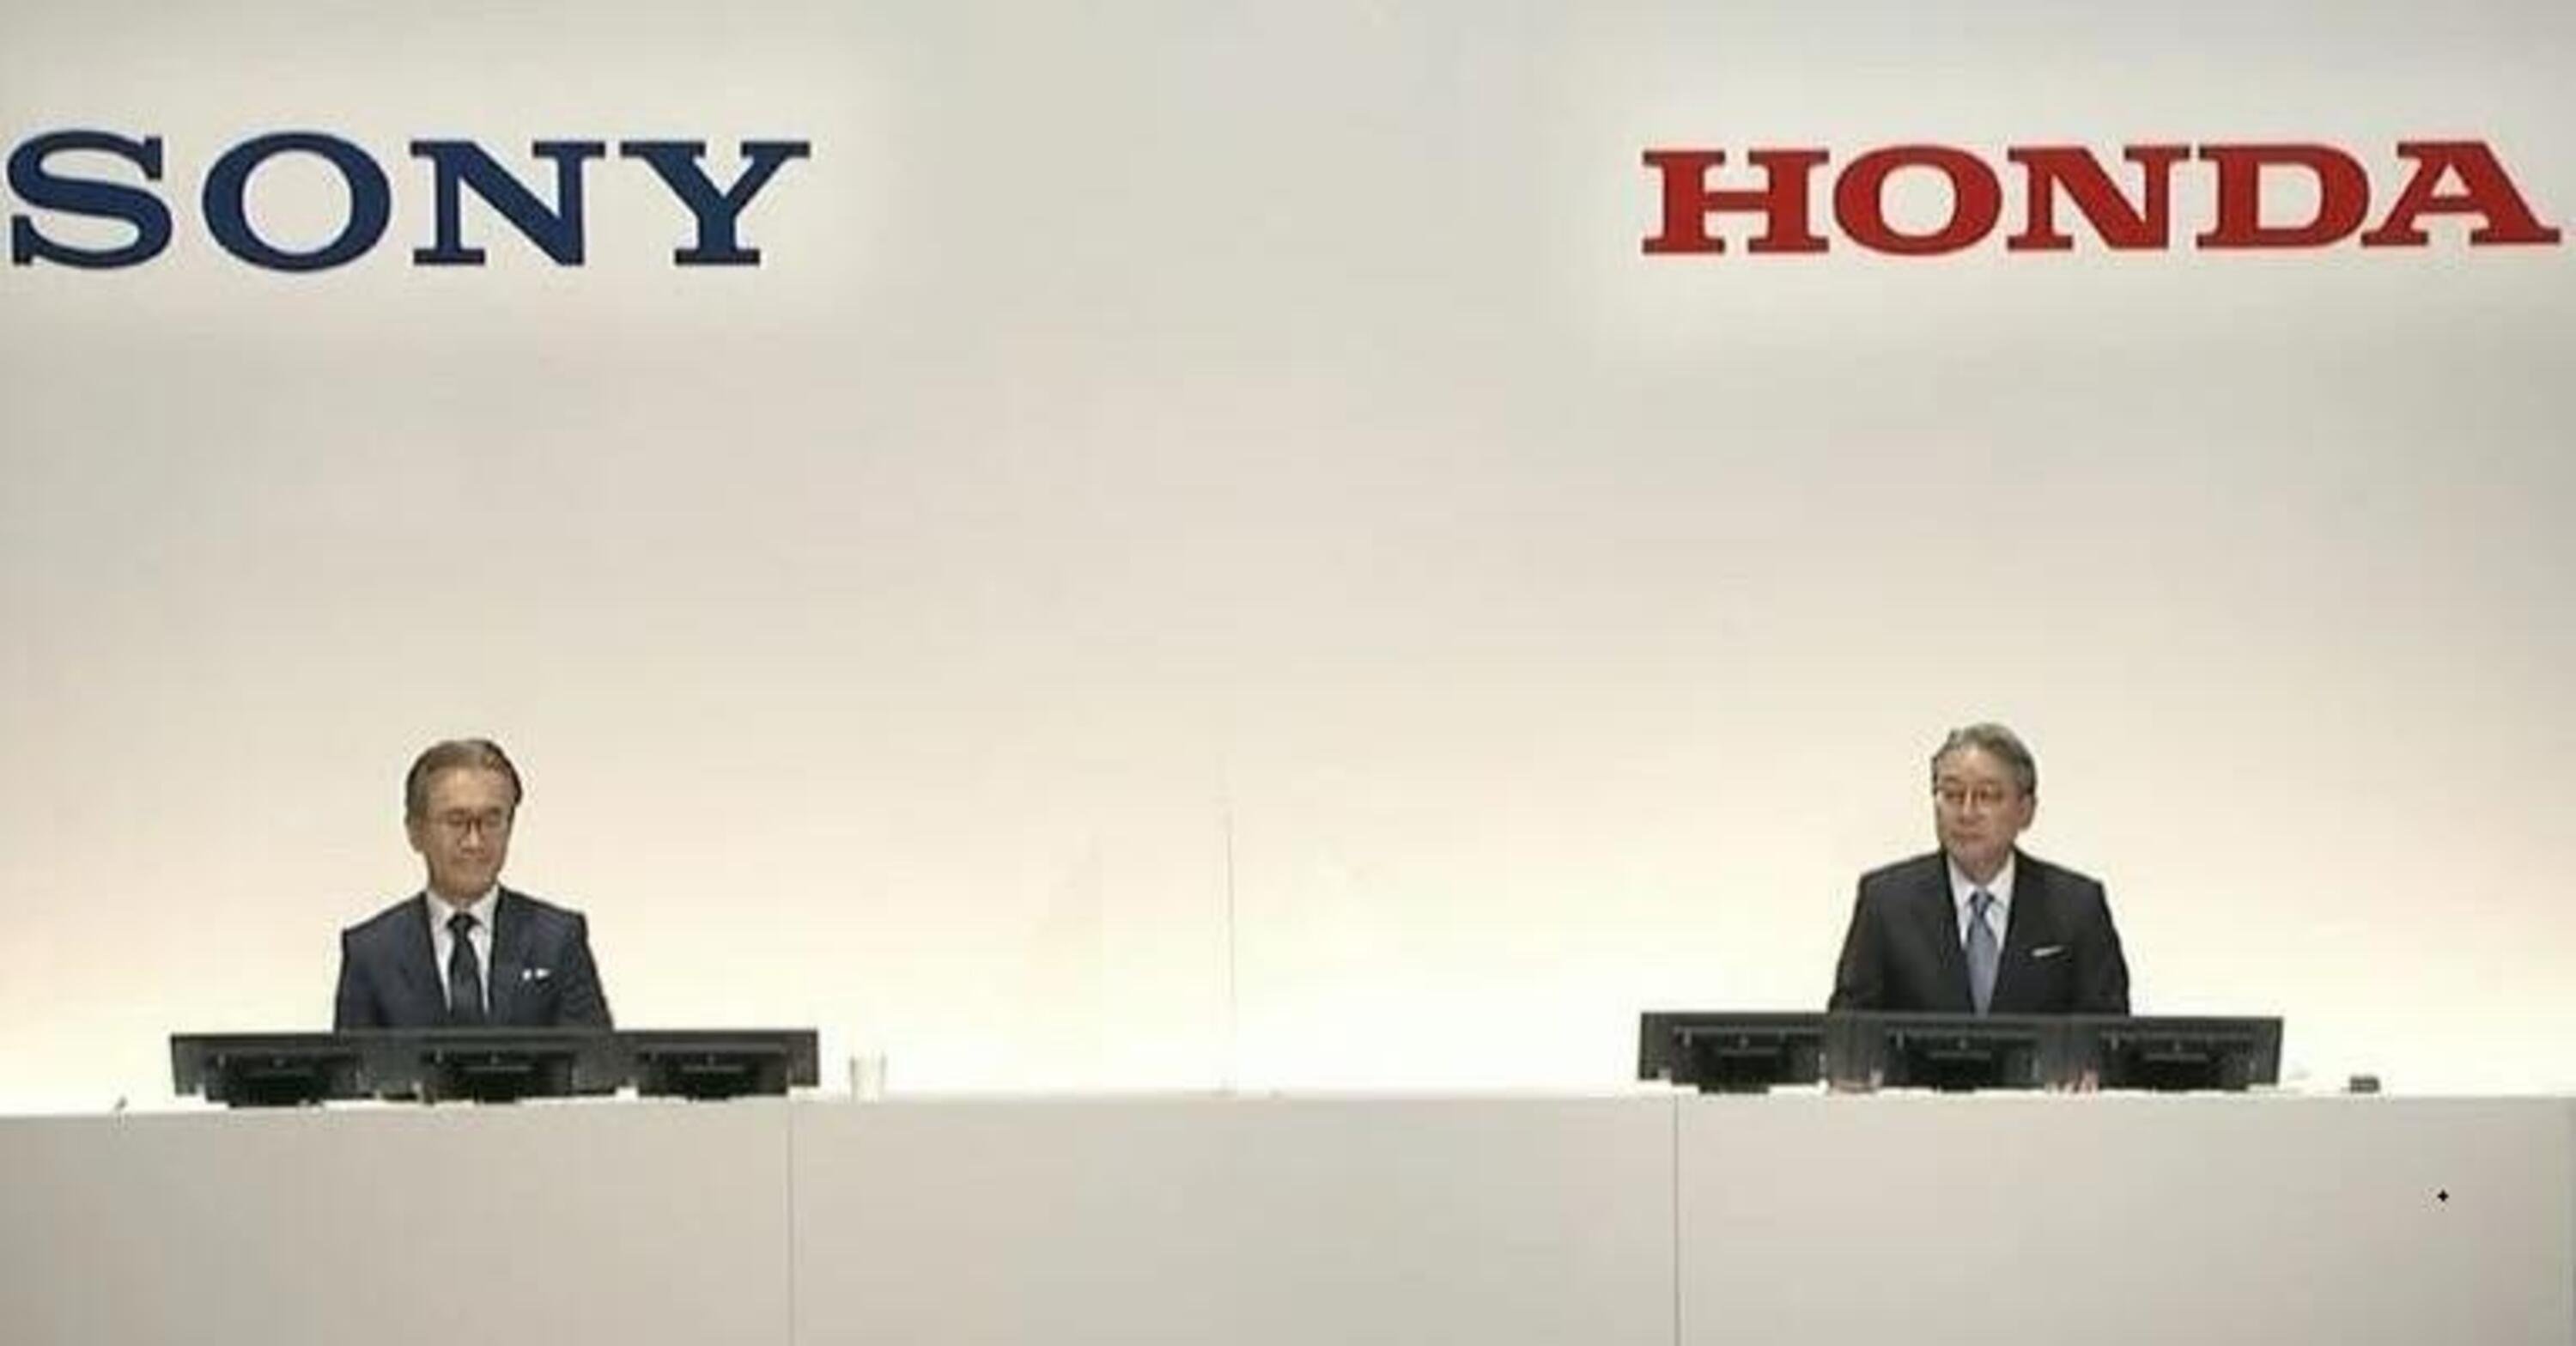 Honda e Sony alleate per la mobilit&agrave; elettrica